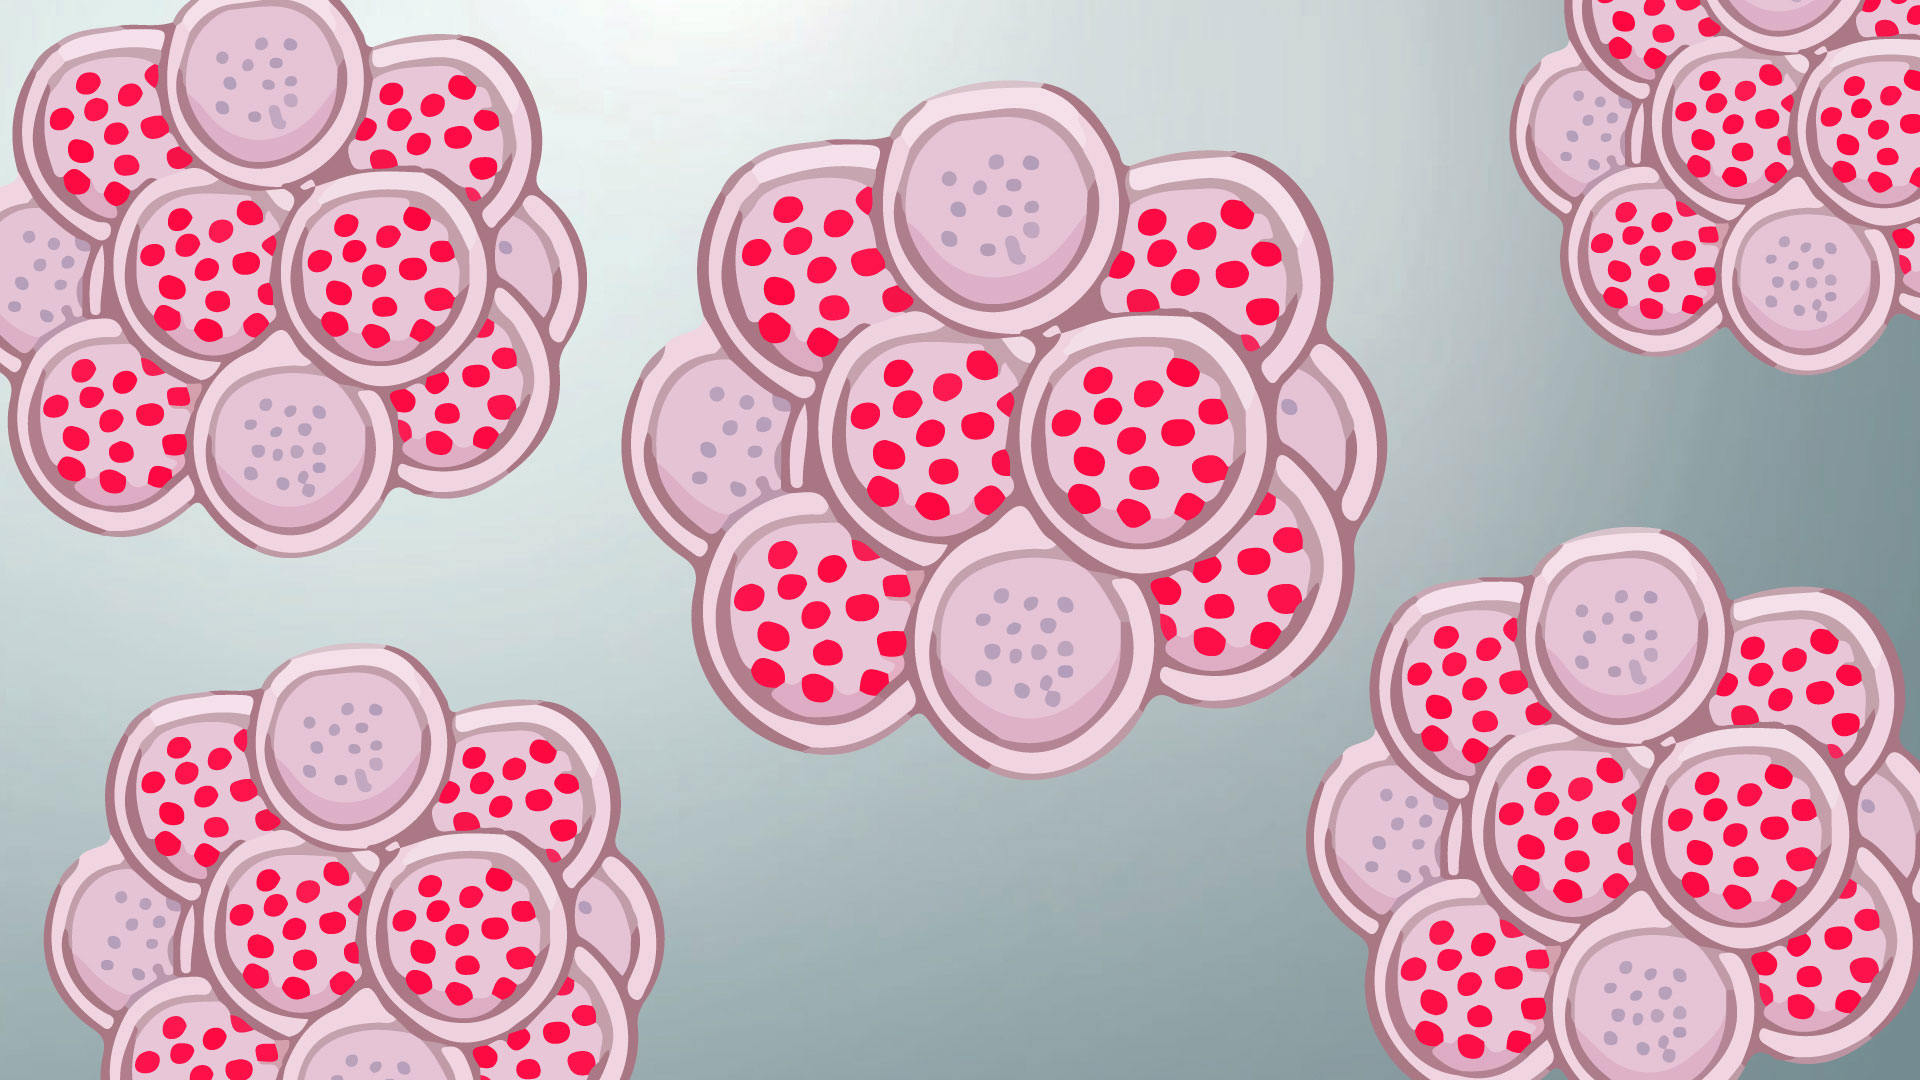 ilustração de uma célula